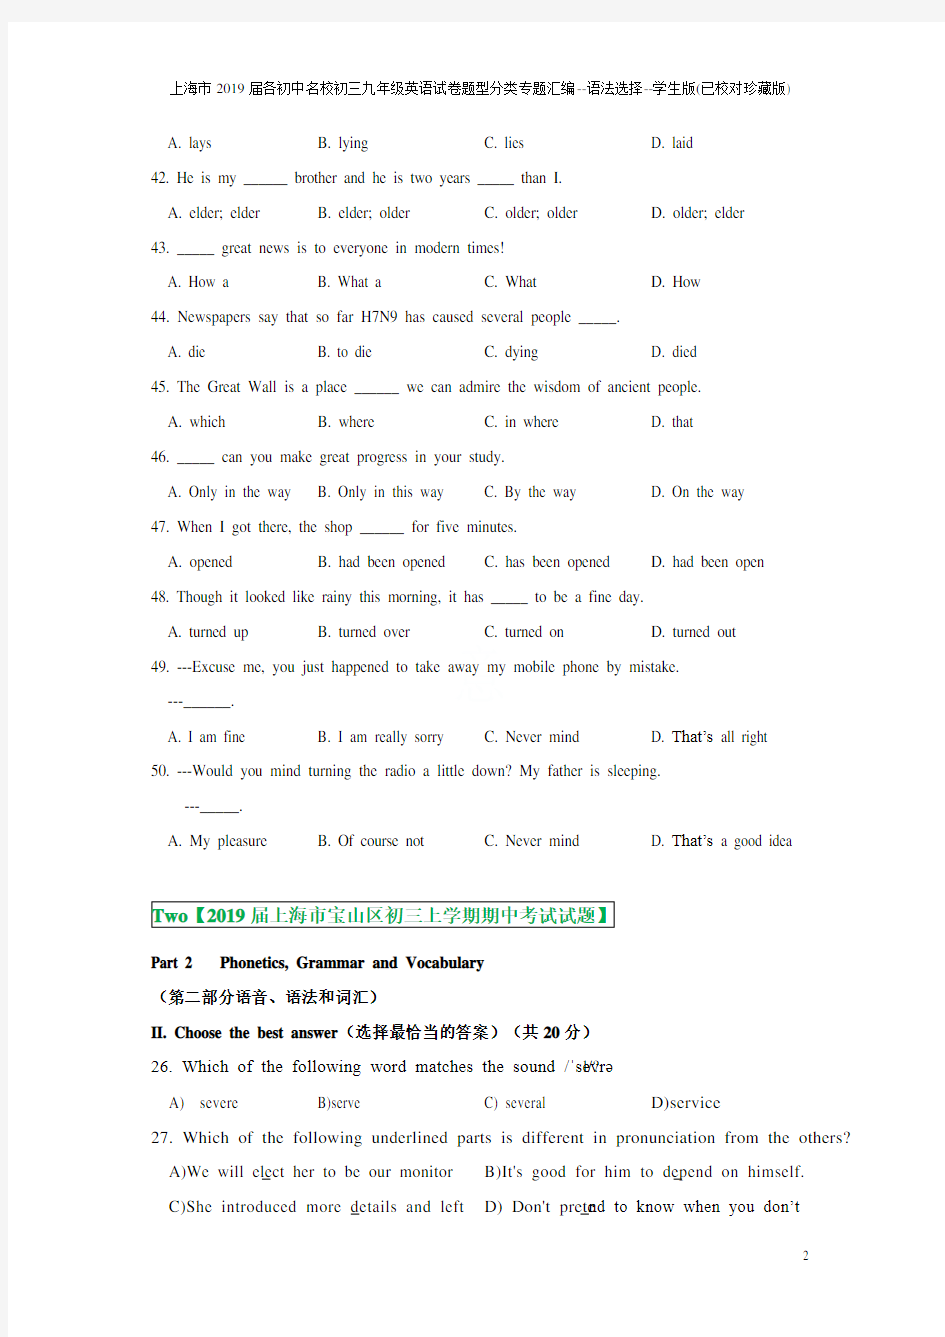 上海市2019届各初中名校初三九年级英语试卷题型分类专题汇编--语法选择--学生版(已校对珍藏版)